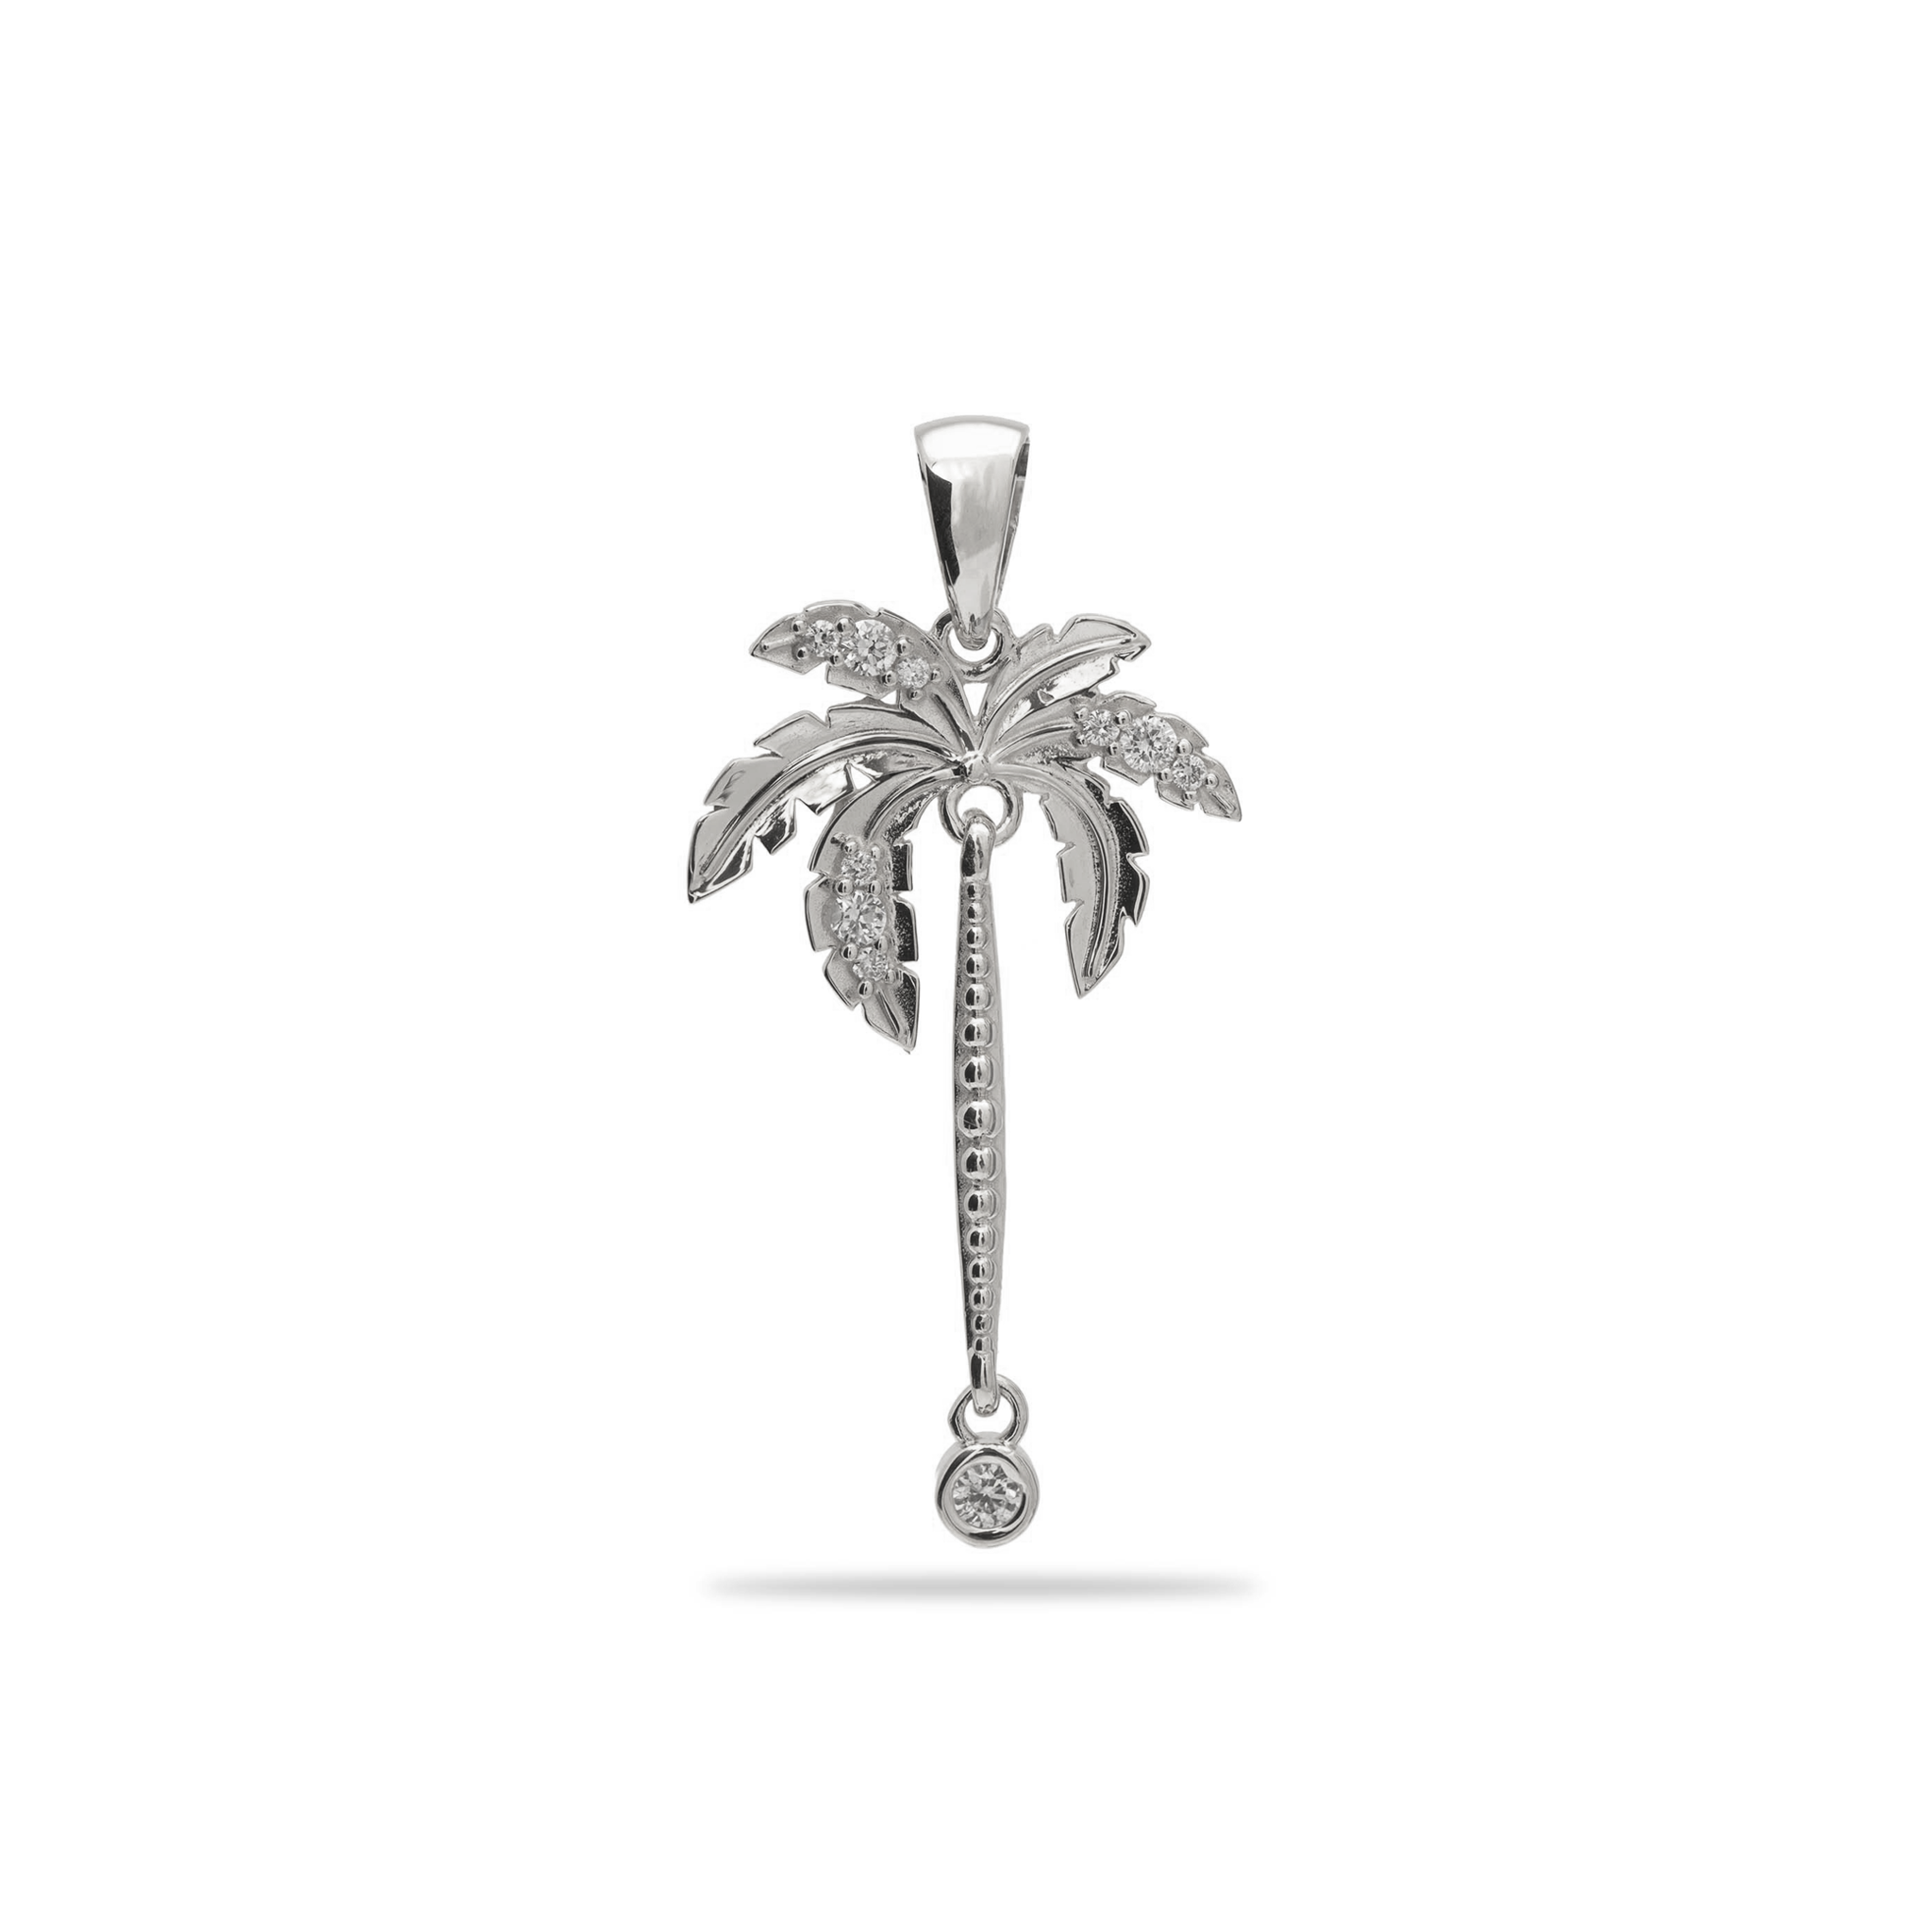 Paradis Palms - Palm Tree Pendant en or blanc avec des diamants - 28 mm